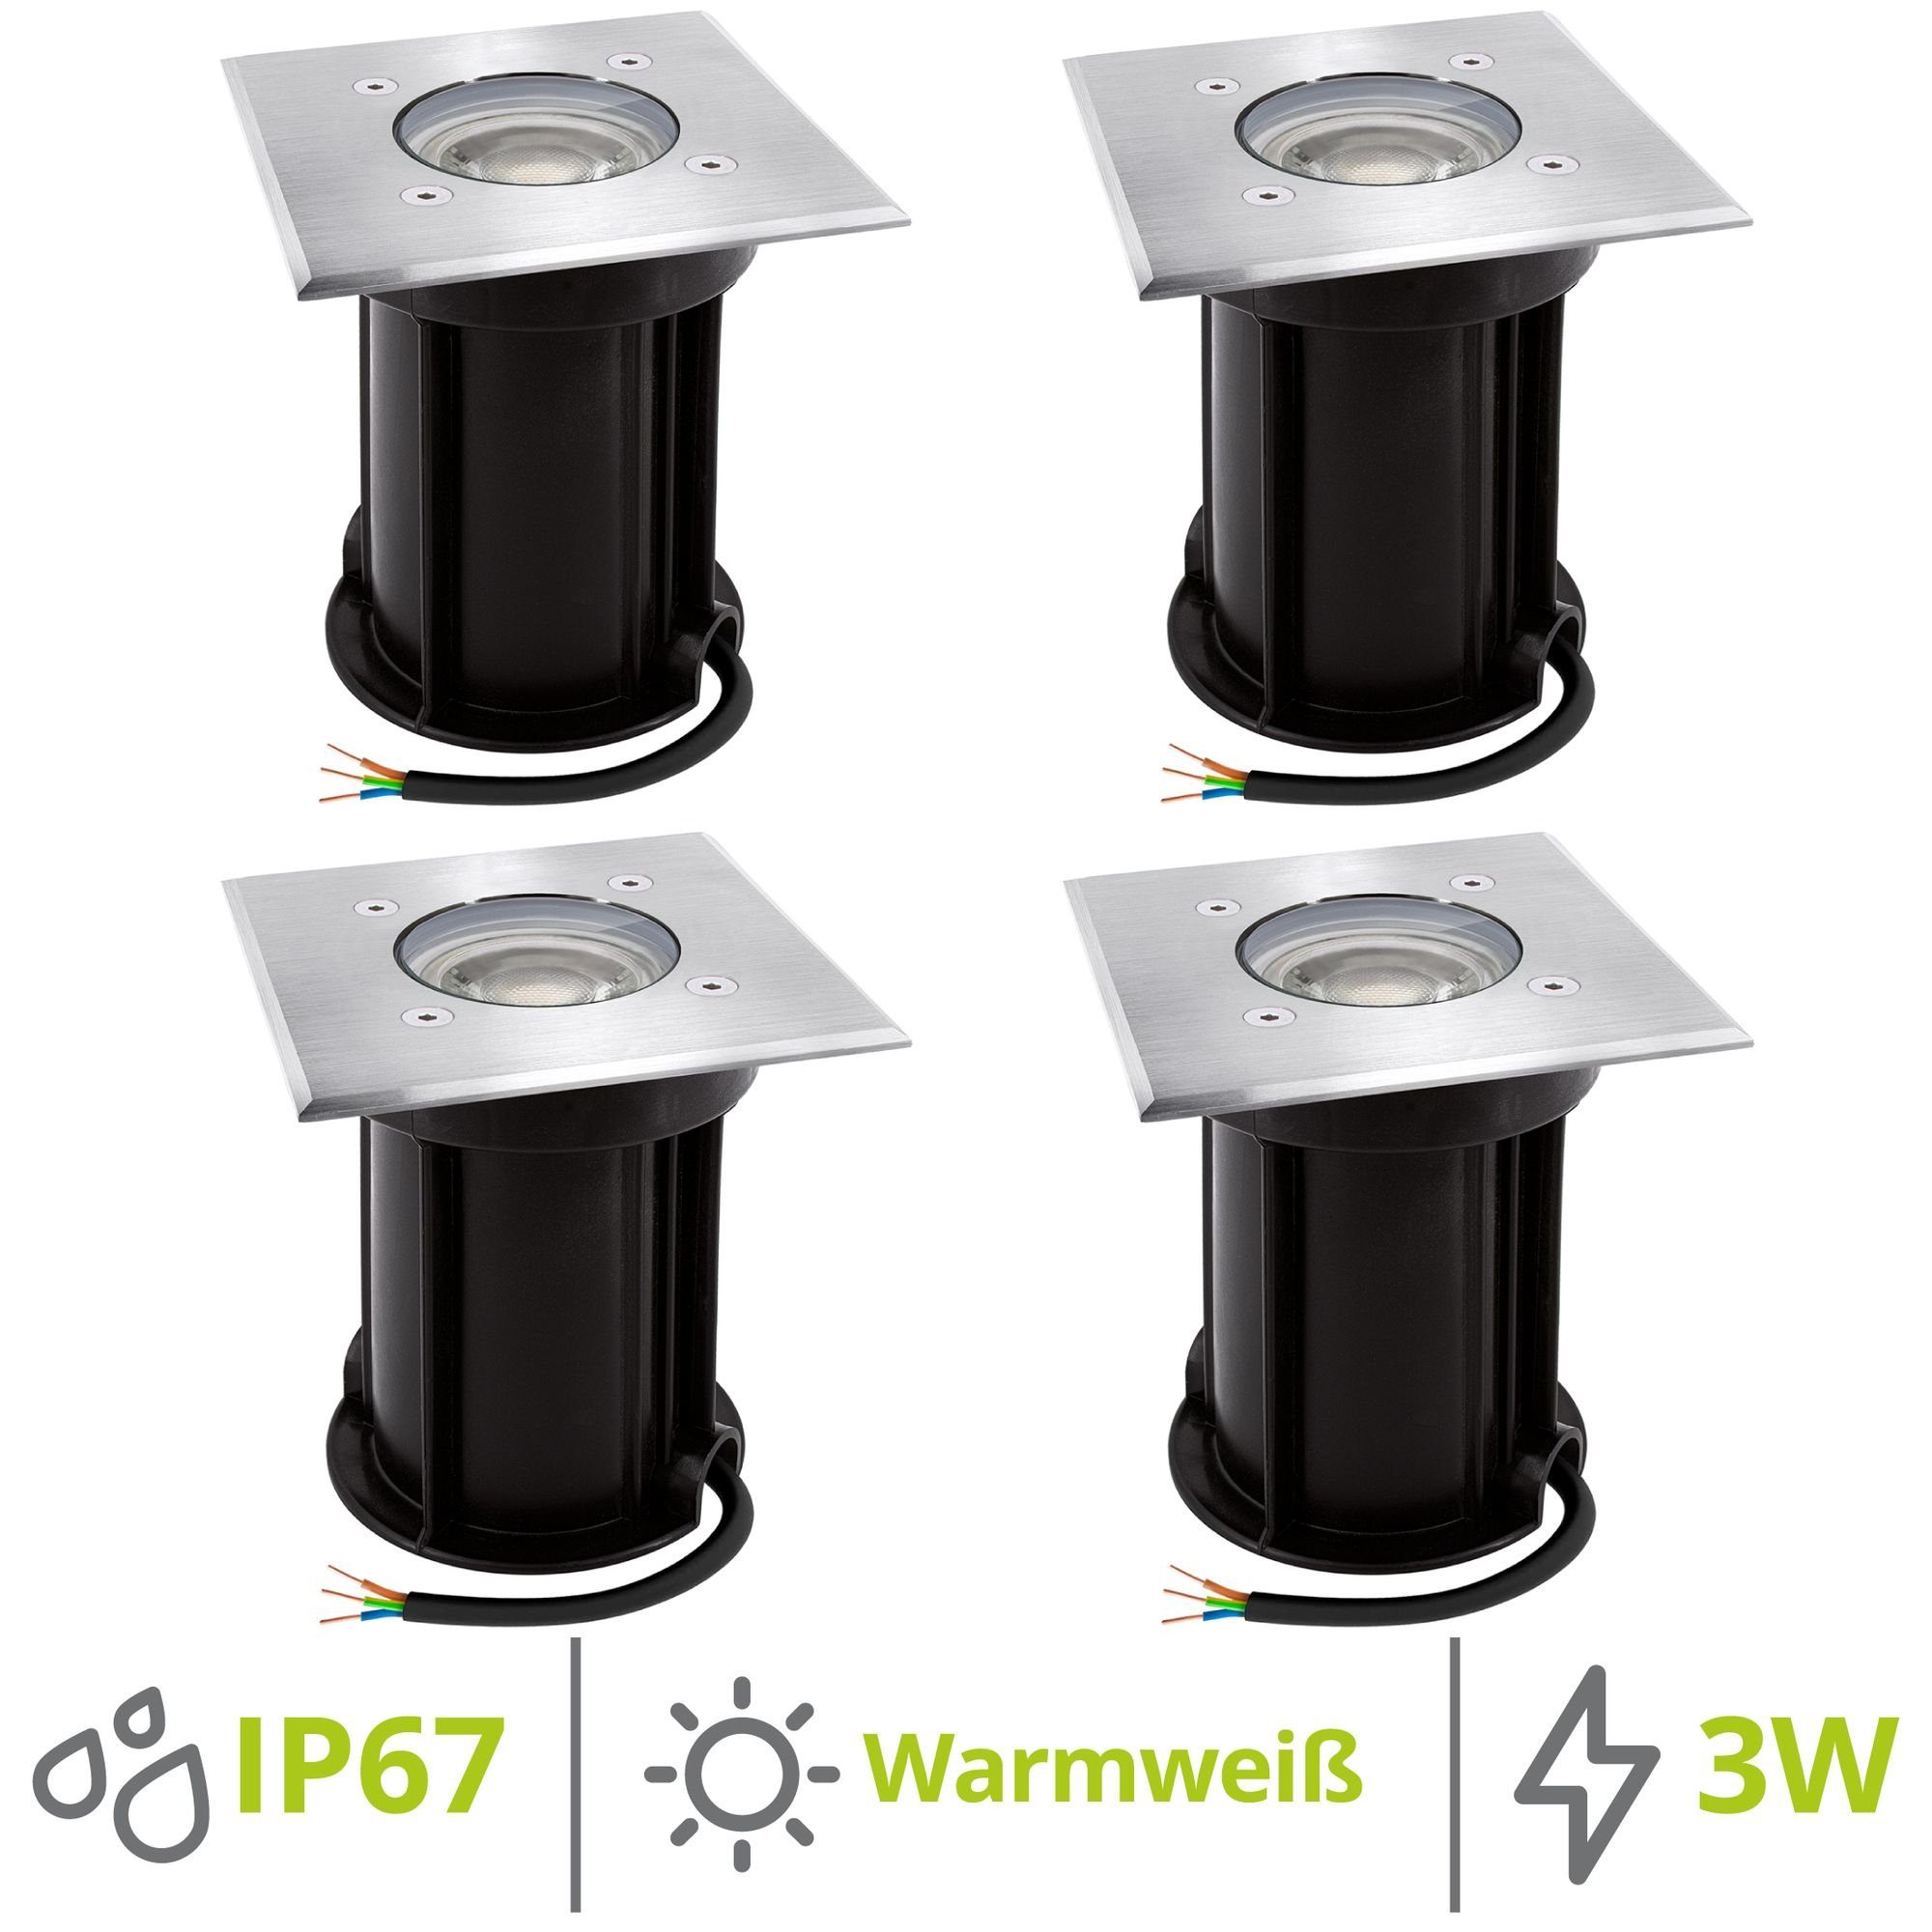 linovum LED Außen-Wandleuchte 4 Stahl Leuchtmittel gebuerstet x Leuchtmittel inklusive Bodeneinbauleuchte IP67, quadratisch inklusive, BOQU